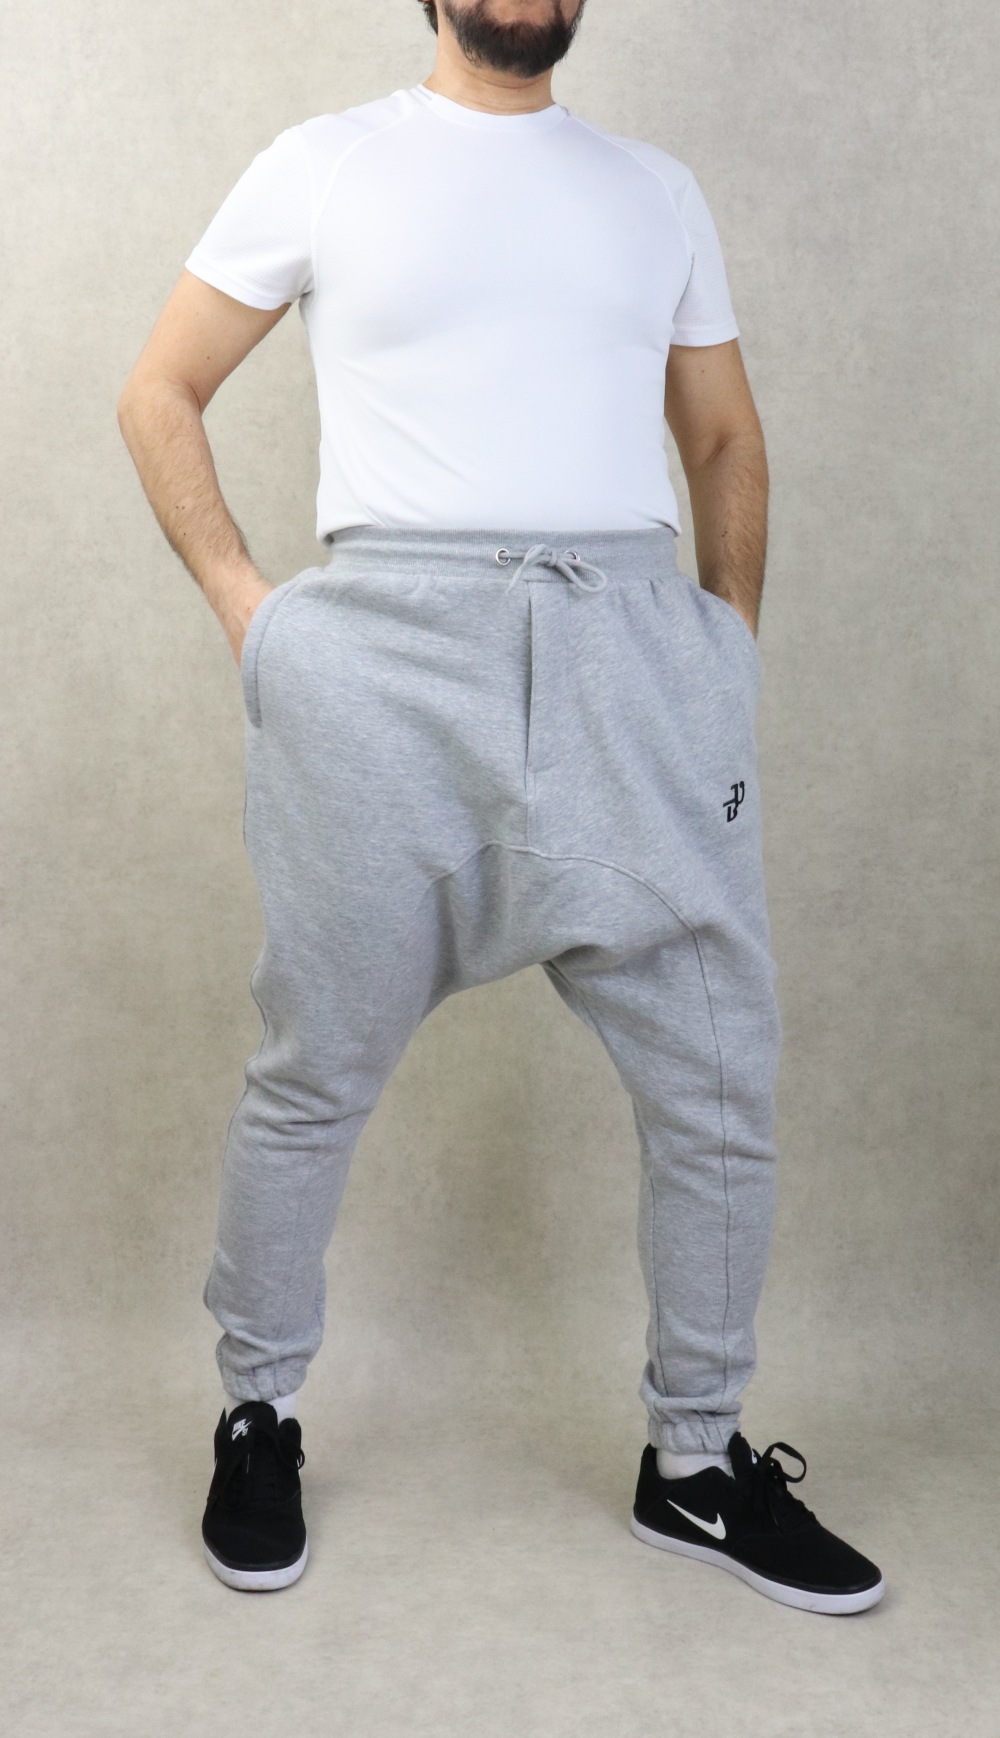 Pantalon jogging Sarouel léger pour homme poches zip blanches - Marque Best  Ummah - Couleur Bleu marine